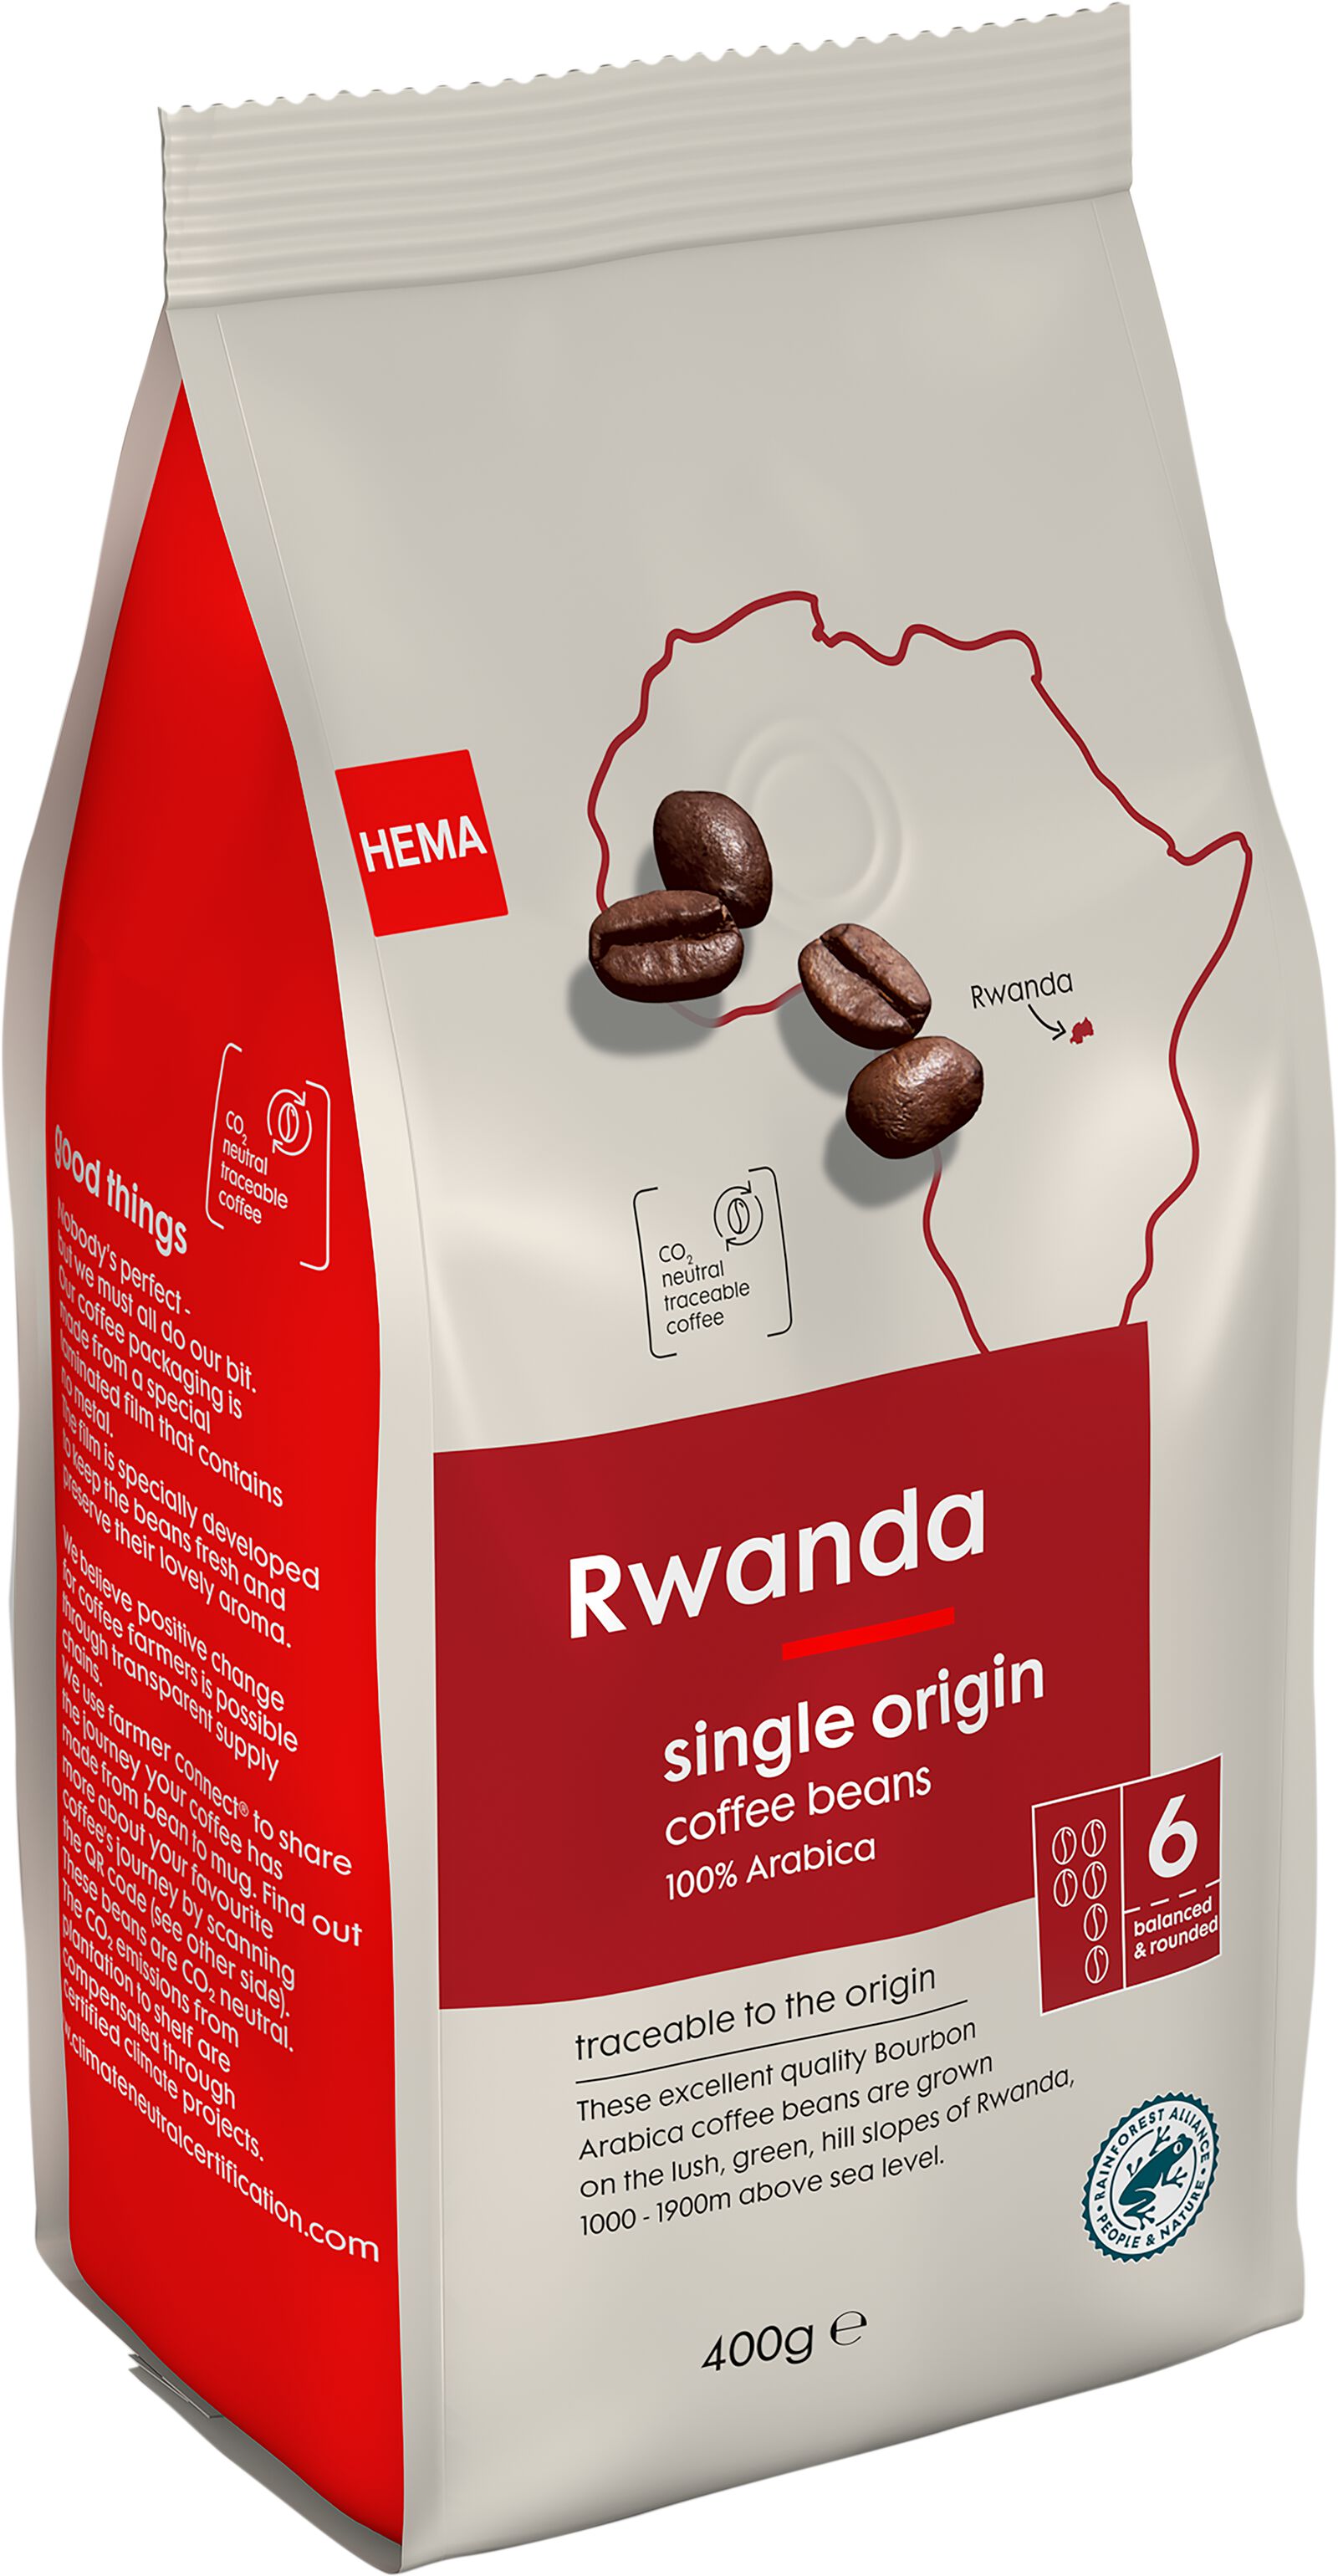 HEMA Koffiebonen Rwanda 400gram